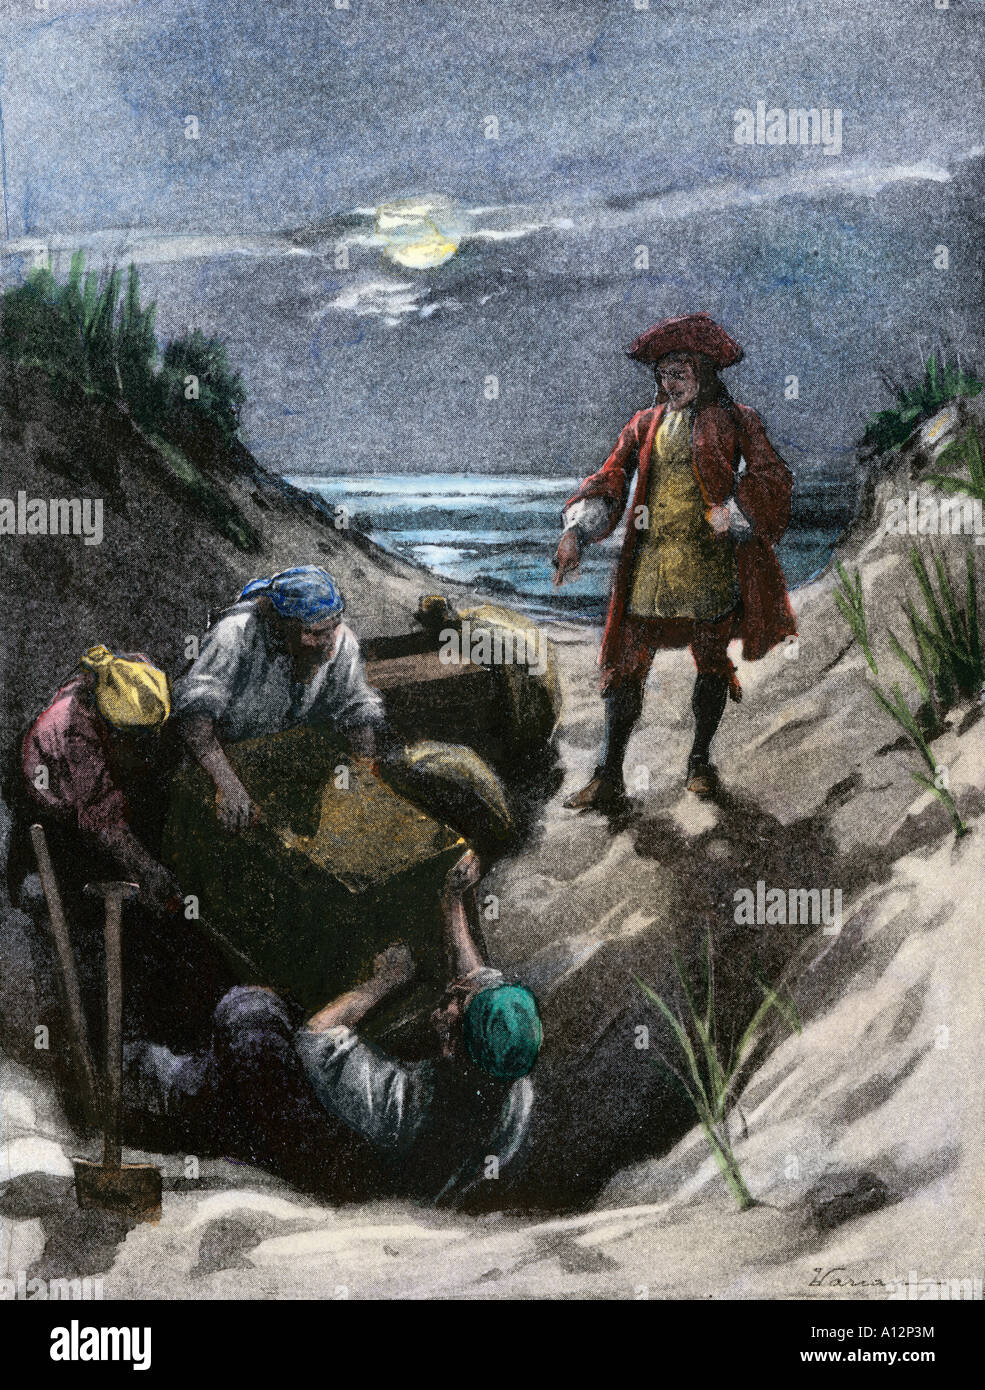 Le capitaine pirate Kidd enterrer son trésor peut-être sur Gardiners Island dans le port de New York. La main, d'une illustration de demi-teinte Banque D'Images